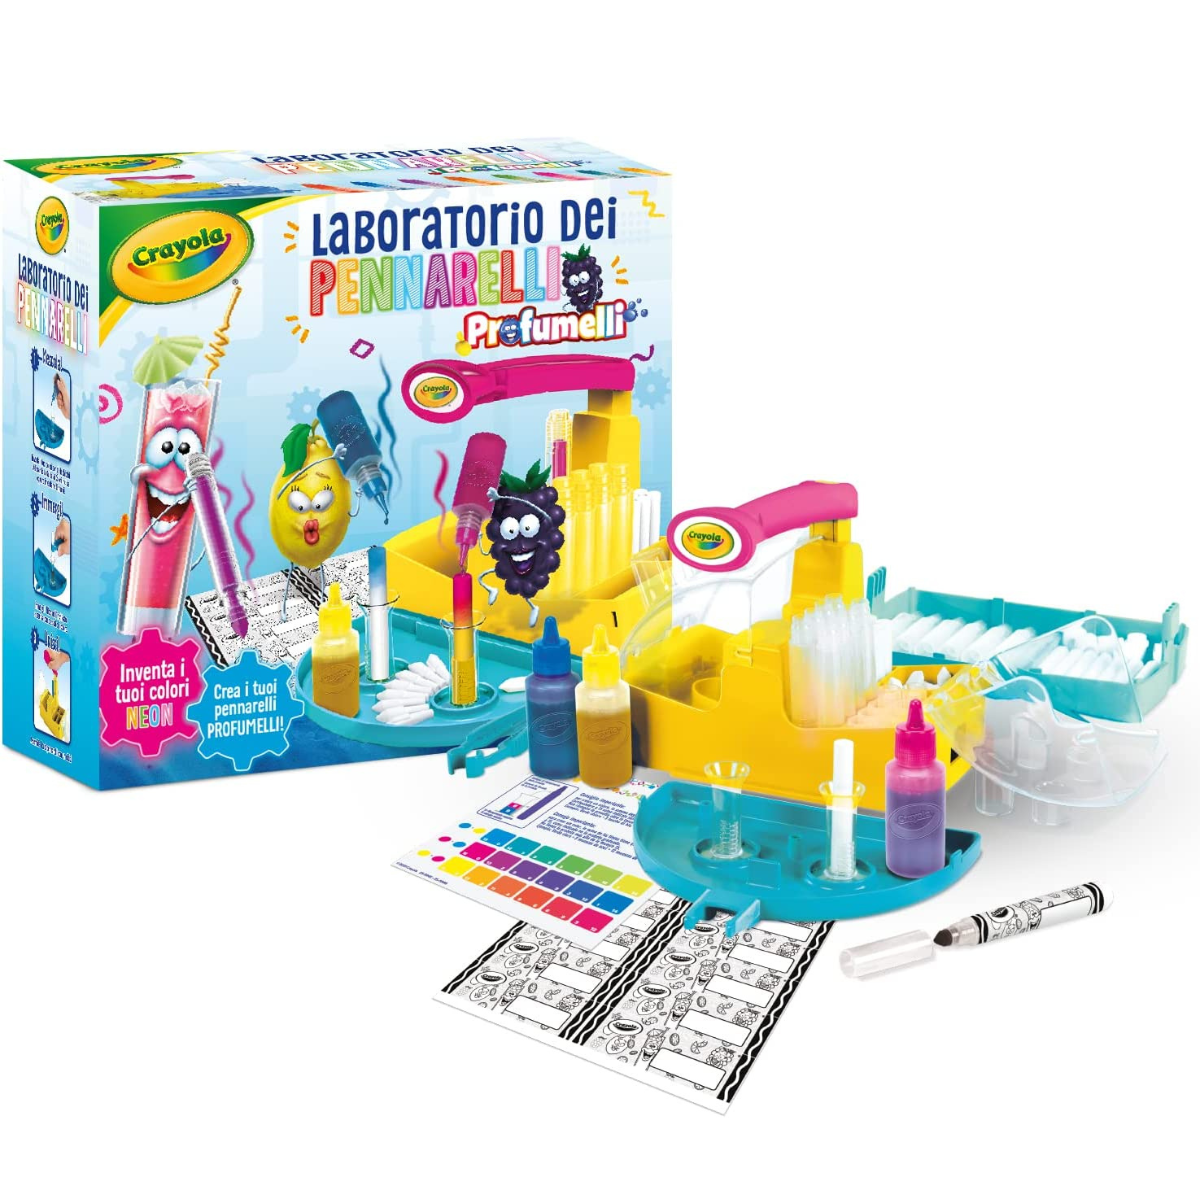 Crayola - laboratorio dei pennarelli profumelli - neon edition - crea i  tuoi pennarelli! inventa i tuoi colori! - Toys Center